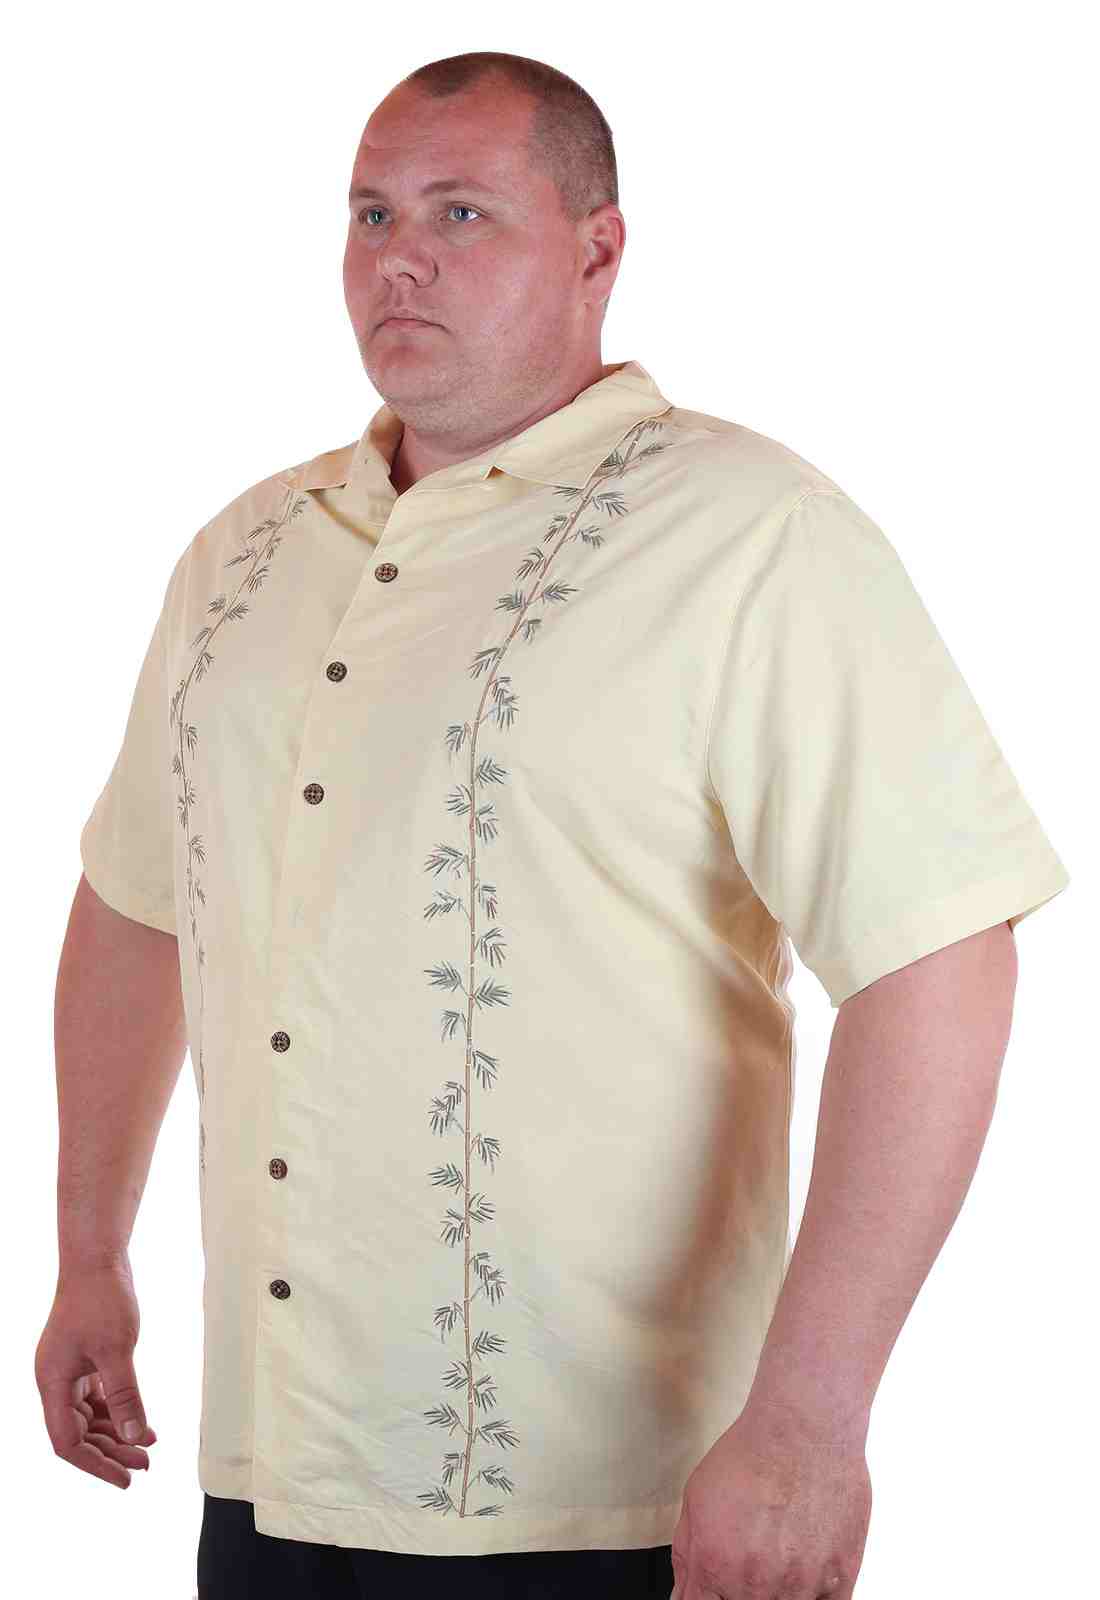 Мужская рубашка больших размеров (батал) к летнему отпуску от Caribbean Joe (США)